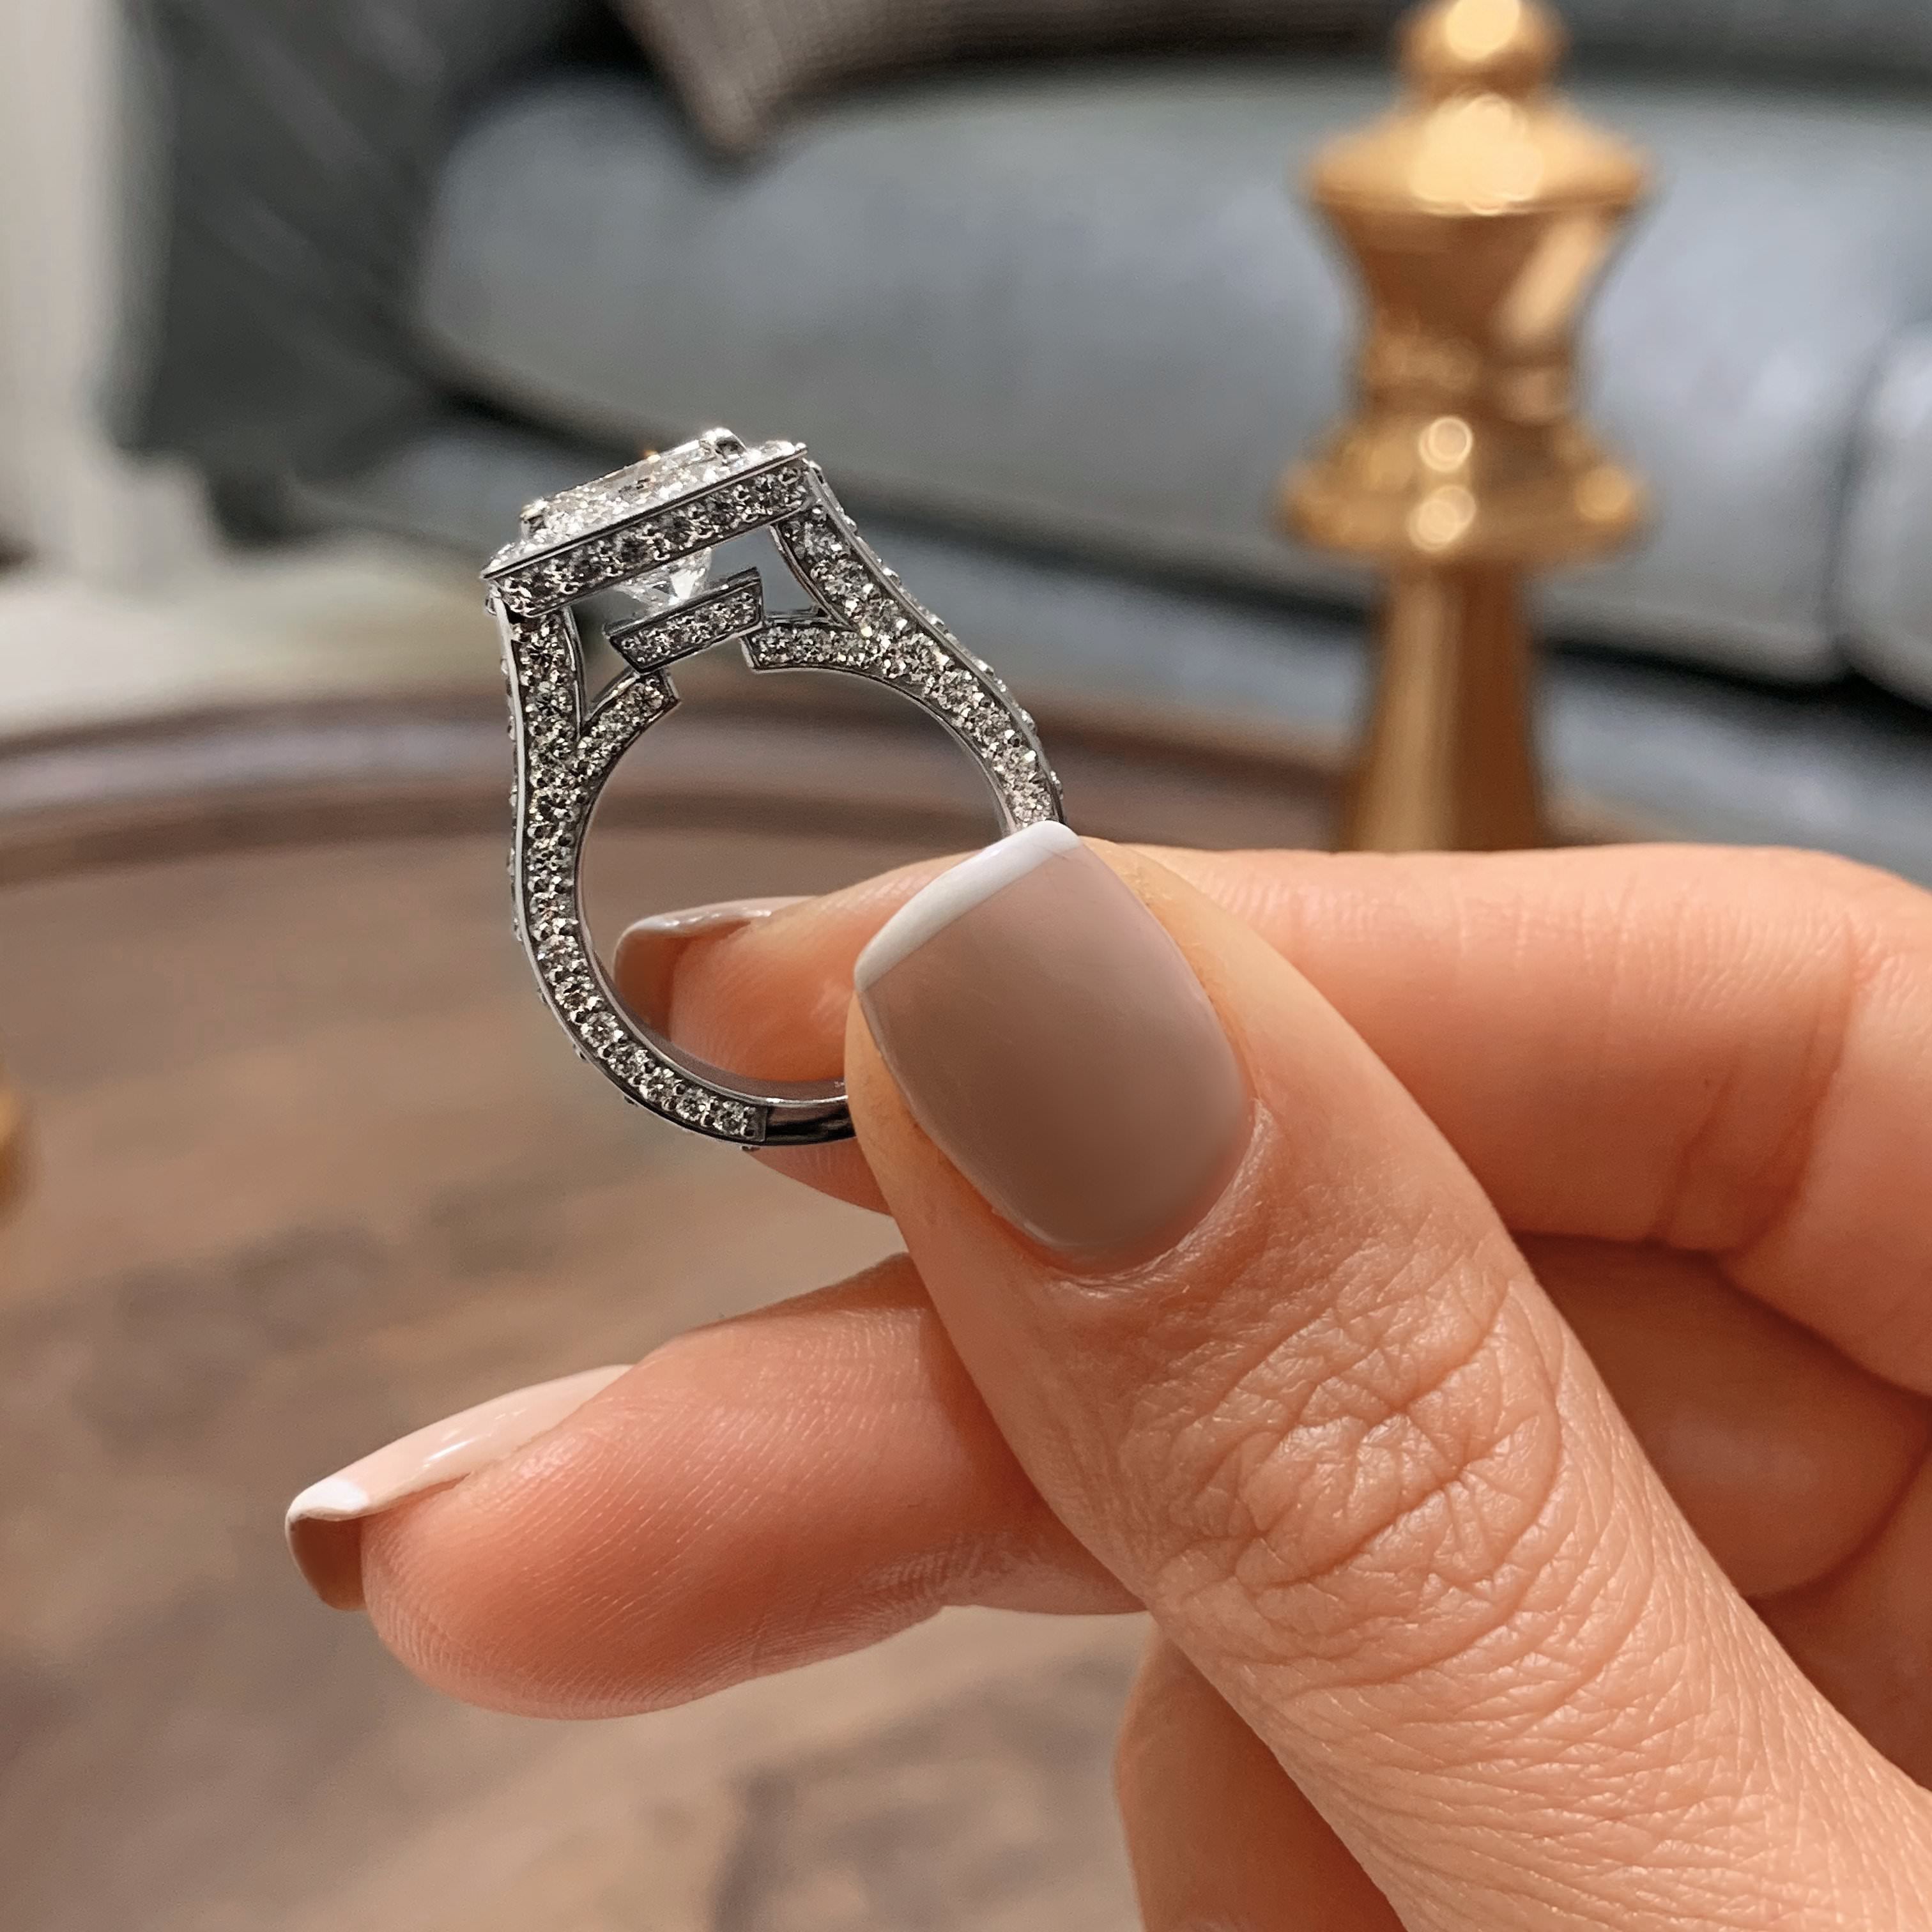 Freya Diamond Engagement Ring -14K White Gold